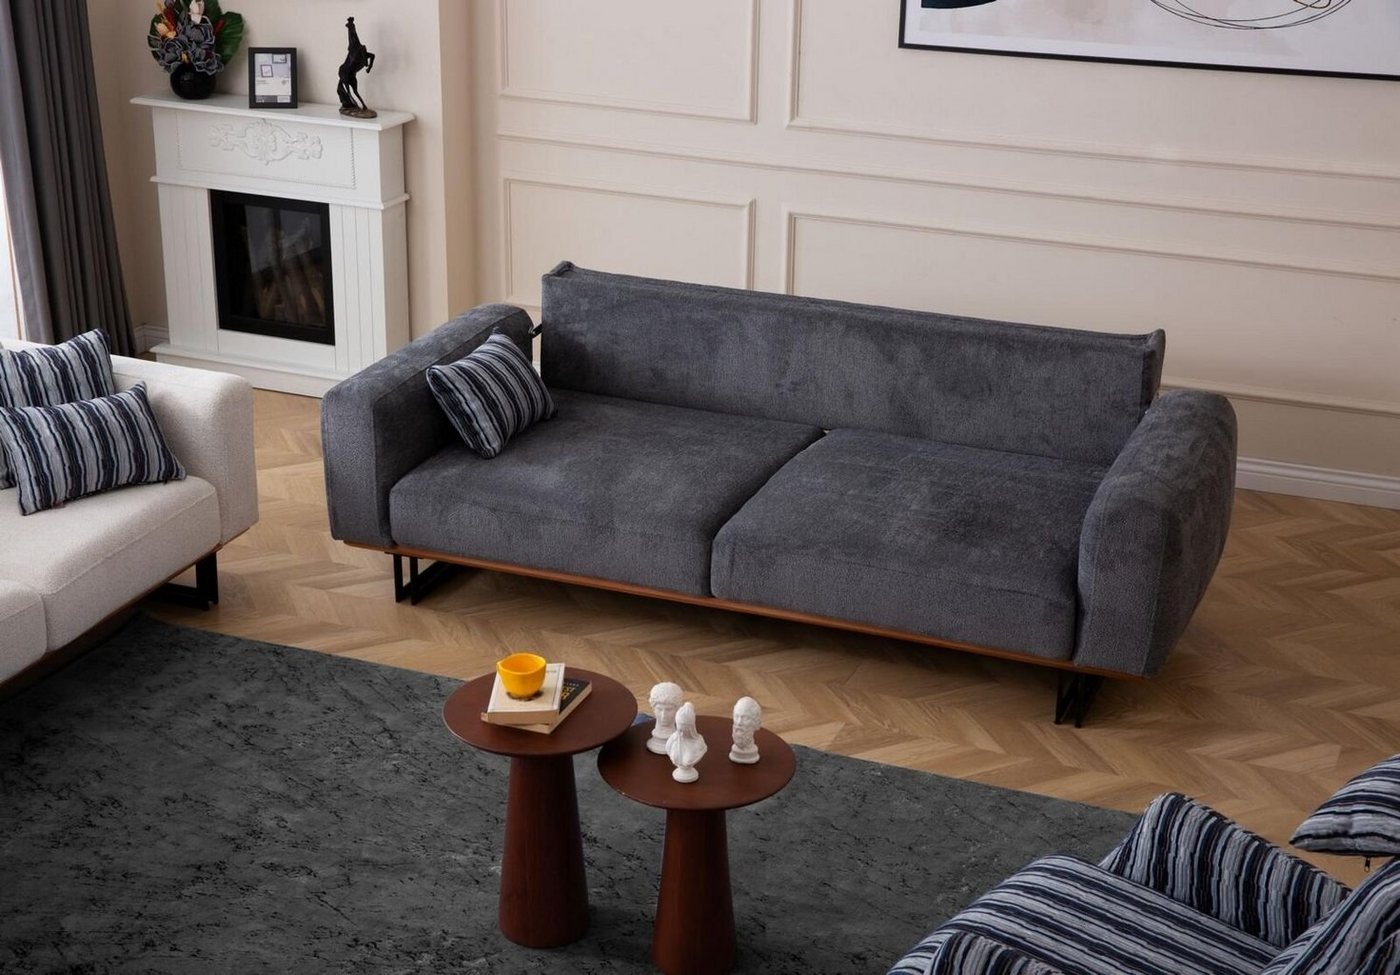 JVmoebel 3-Sitzer Couch 230cm Sitzpolster 3 Sitzer Sofa Grau Designer Möbel Wohnzimmer, 1 Teile, Made in Europa von JVmoebel